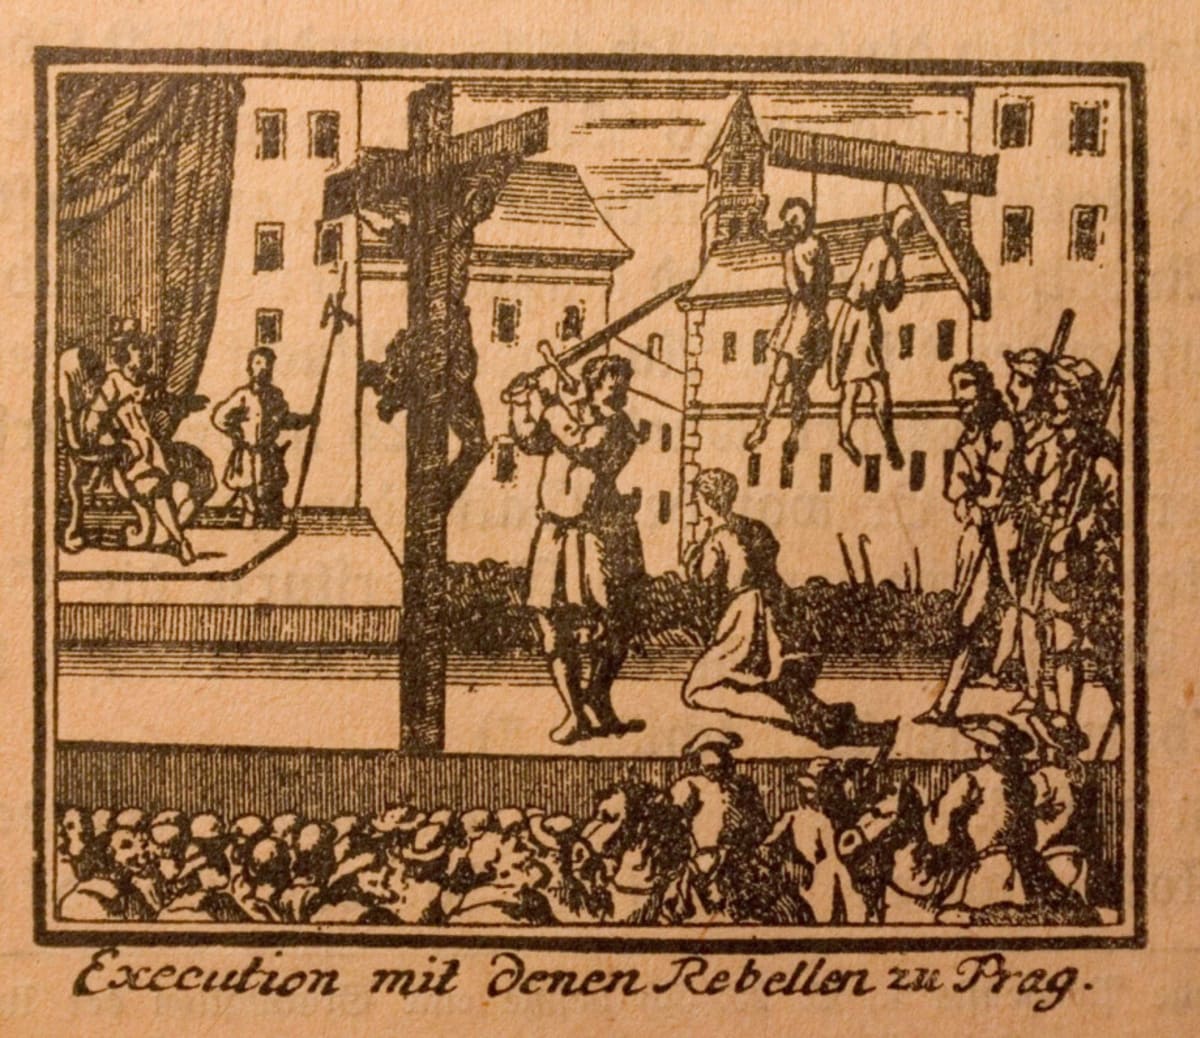 Staroměstská exekuce, poprava 27 rebelů 21. července 1621. Někteří byli sťati, jiní oběšeni. 